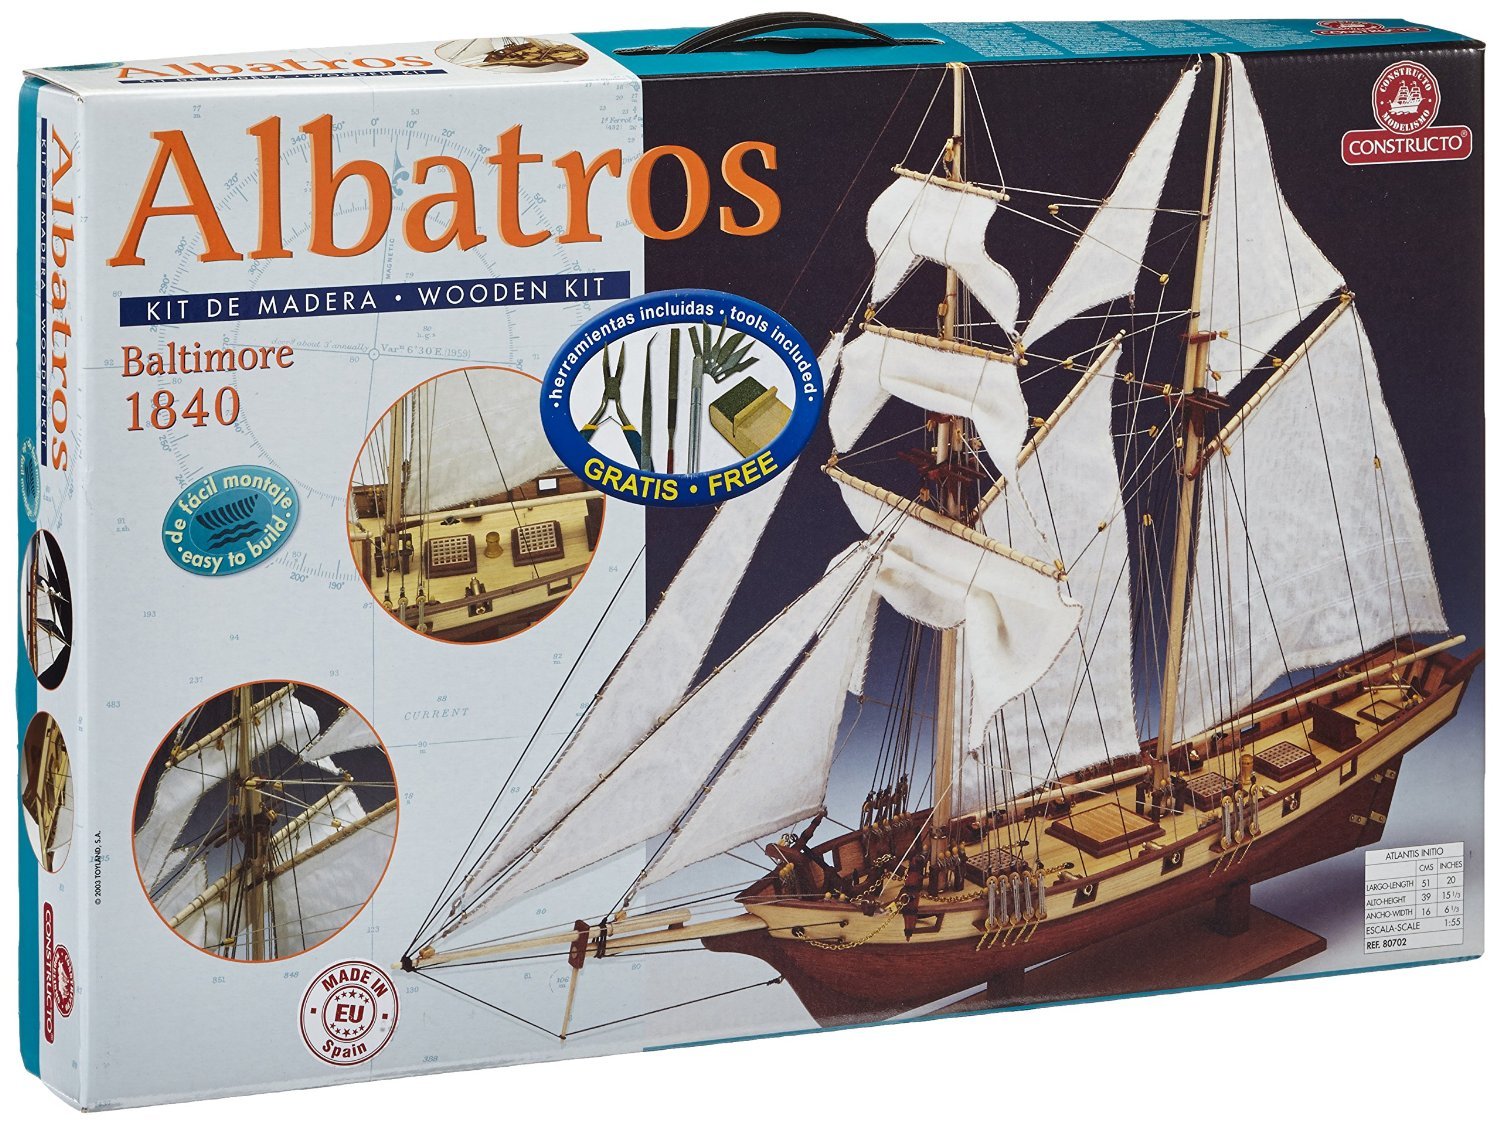 Kit Barco -Albatros- E:1/55 Constructo